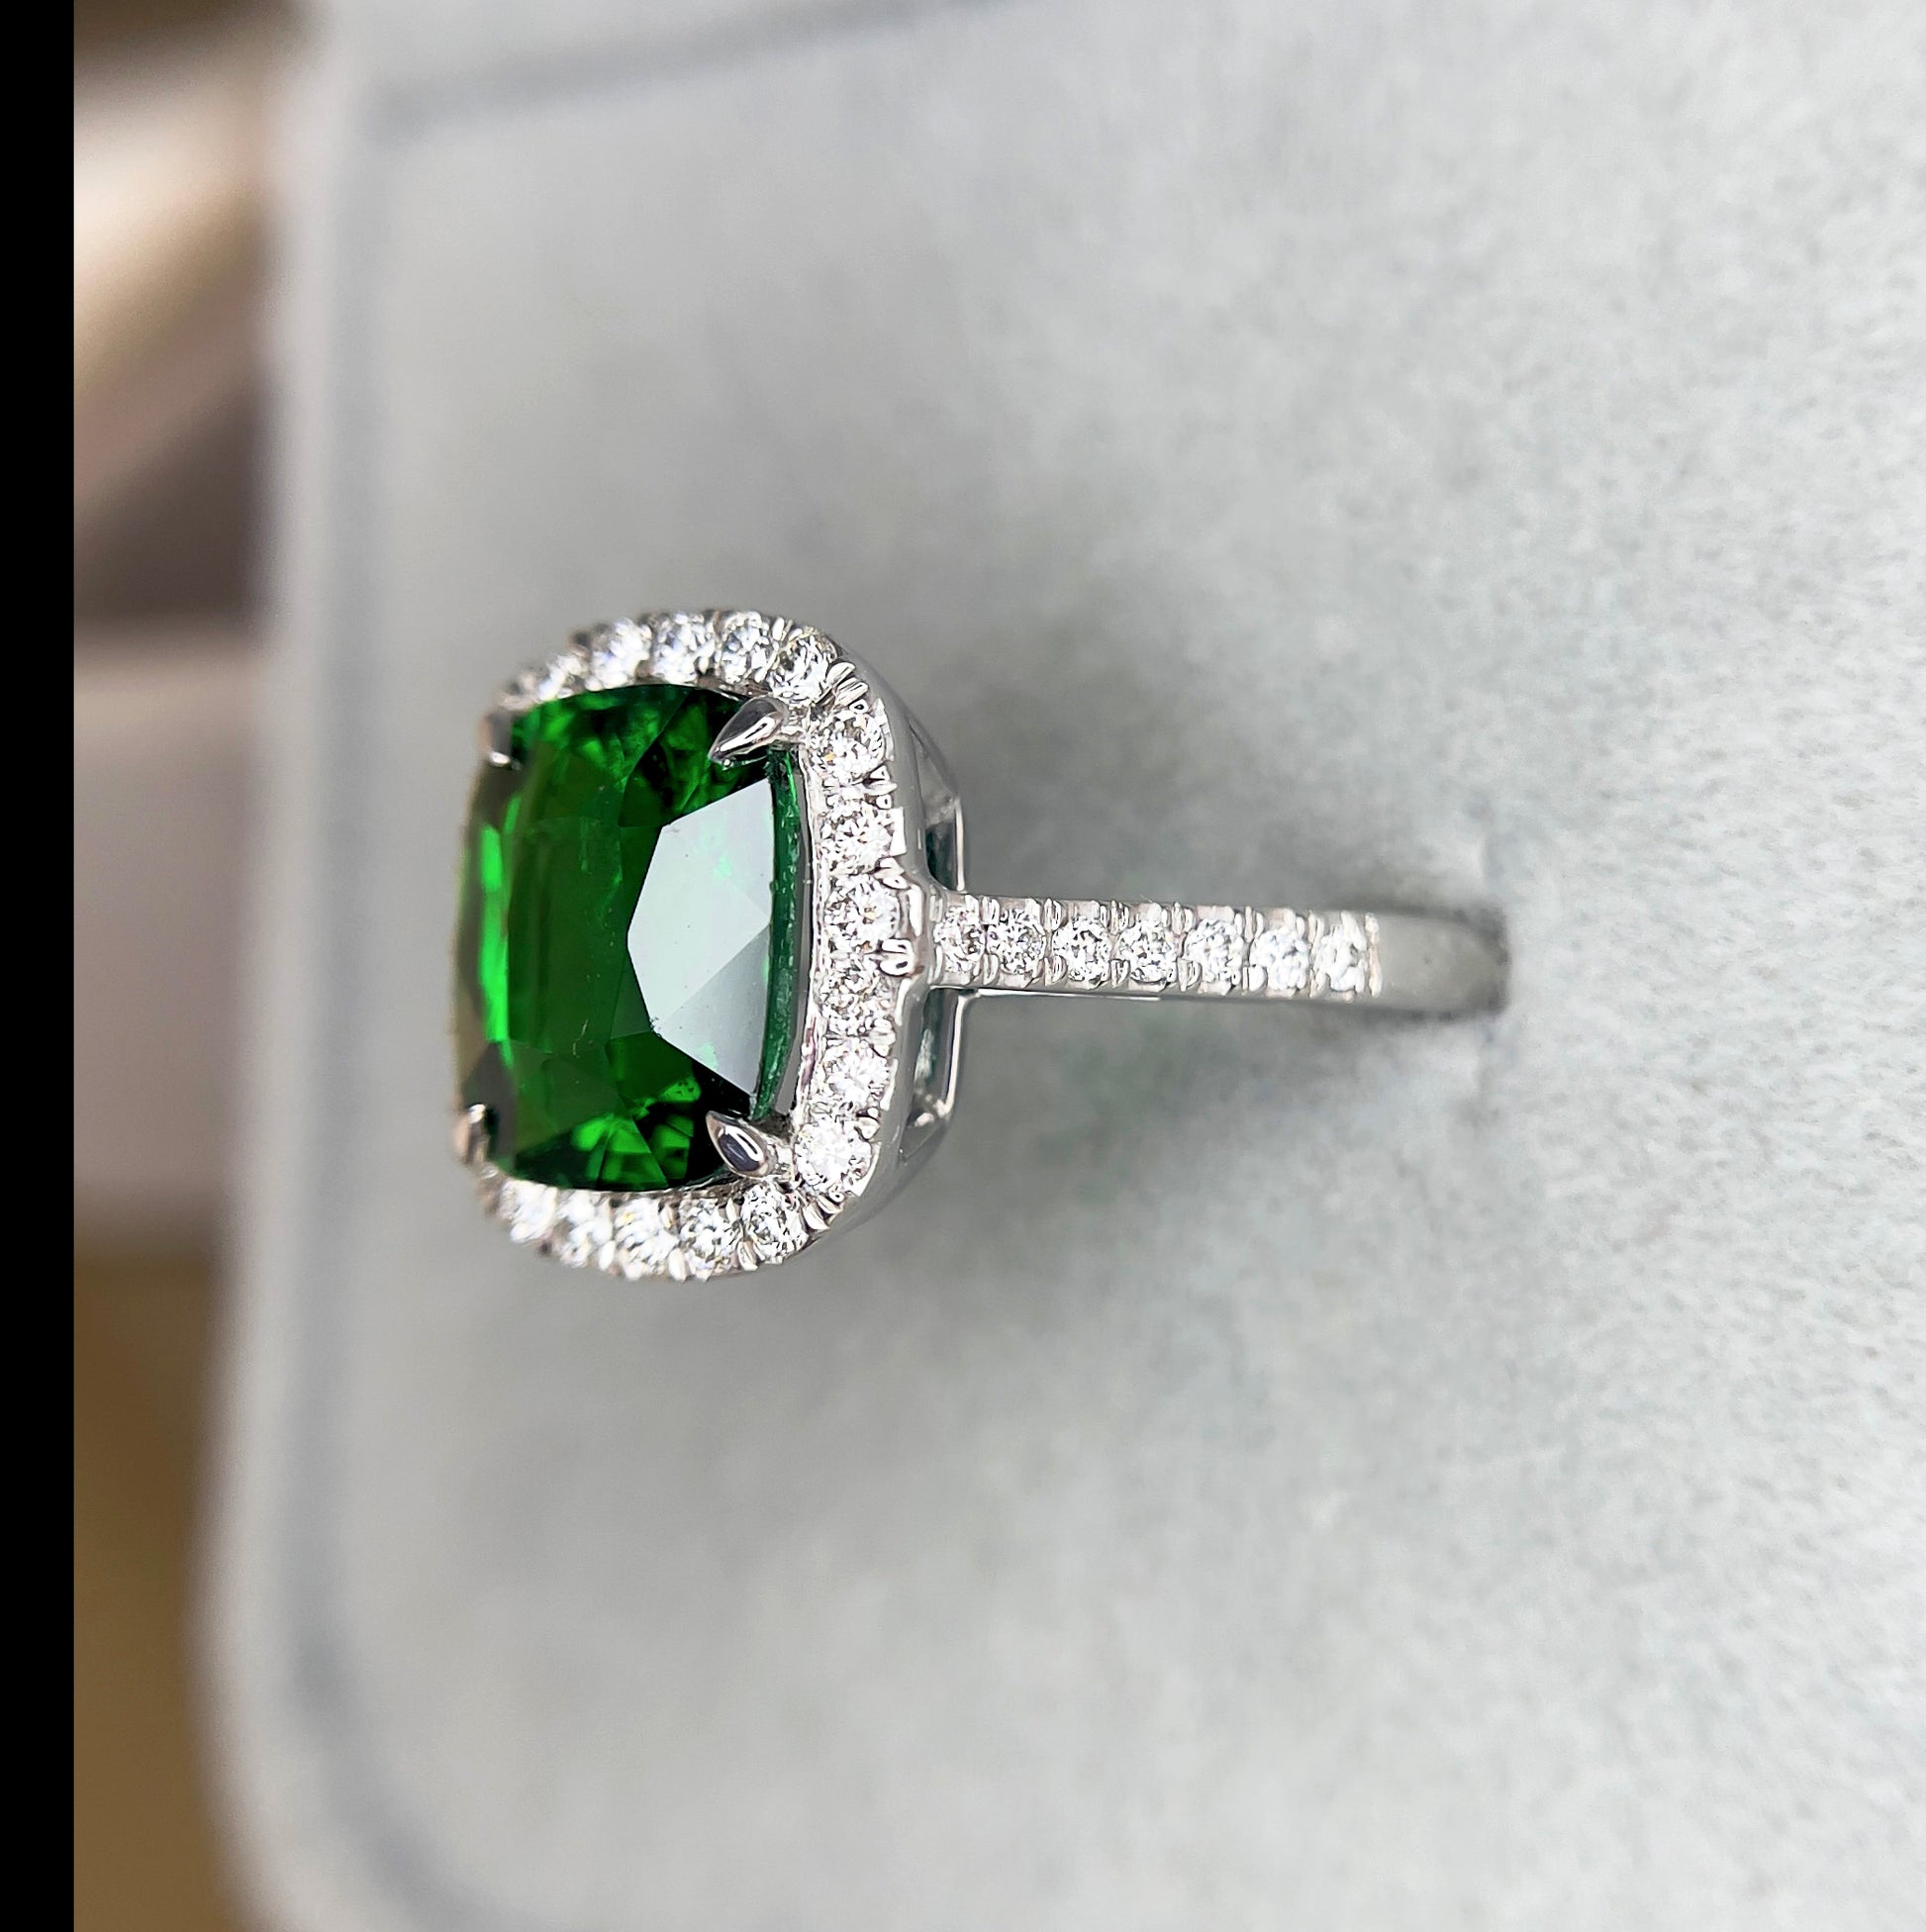 Green Garnet Ring, Garnet Ring 18k White gold, tsavorite garnet ring, unique ring, gift for her, Anniversary, Green Gemstone Engagement ring